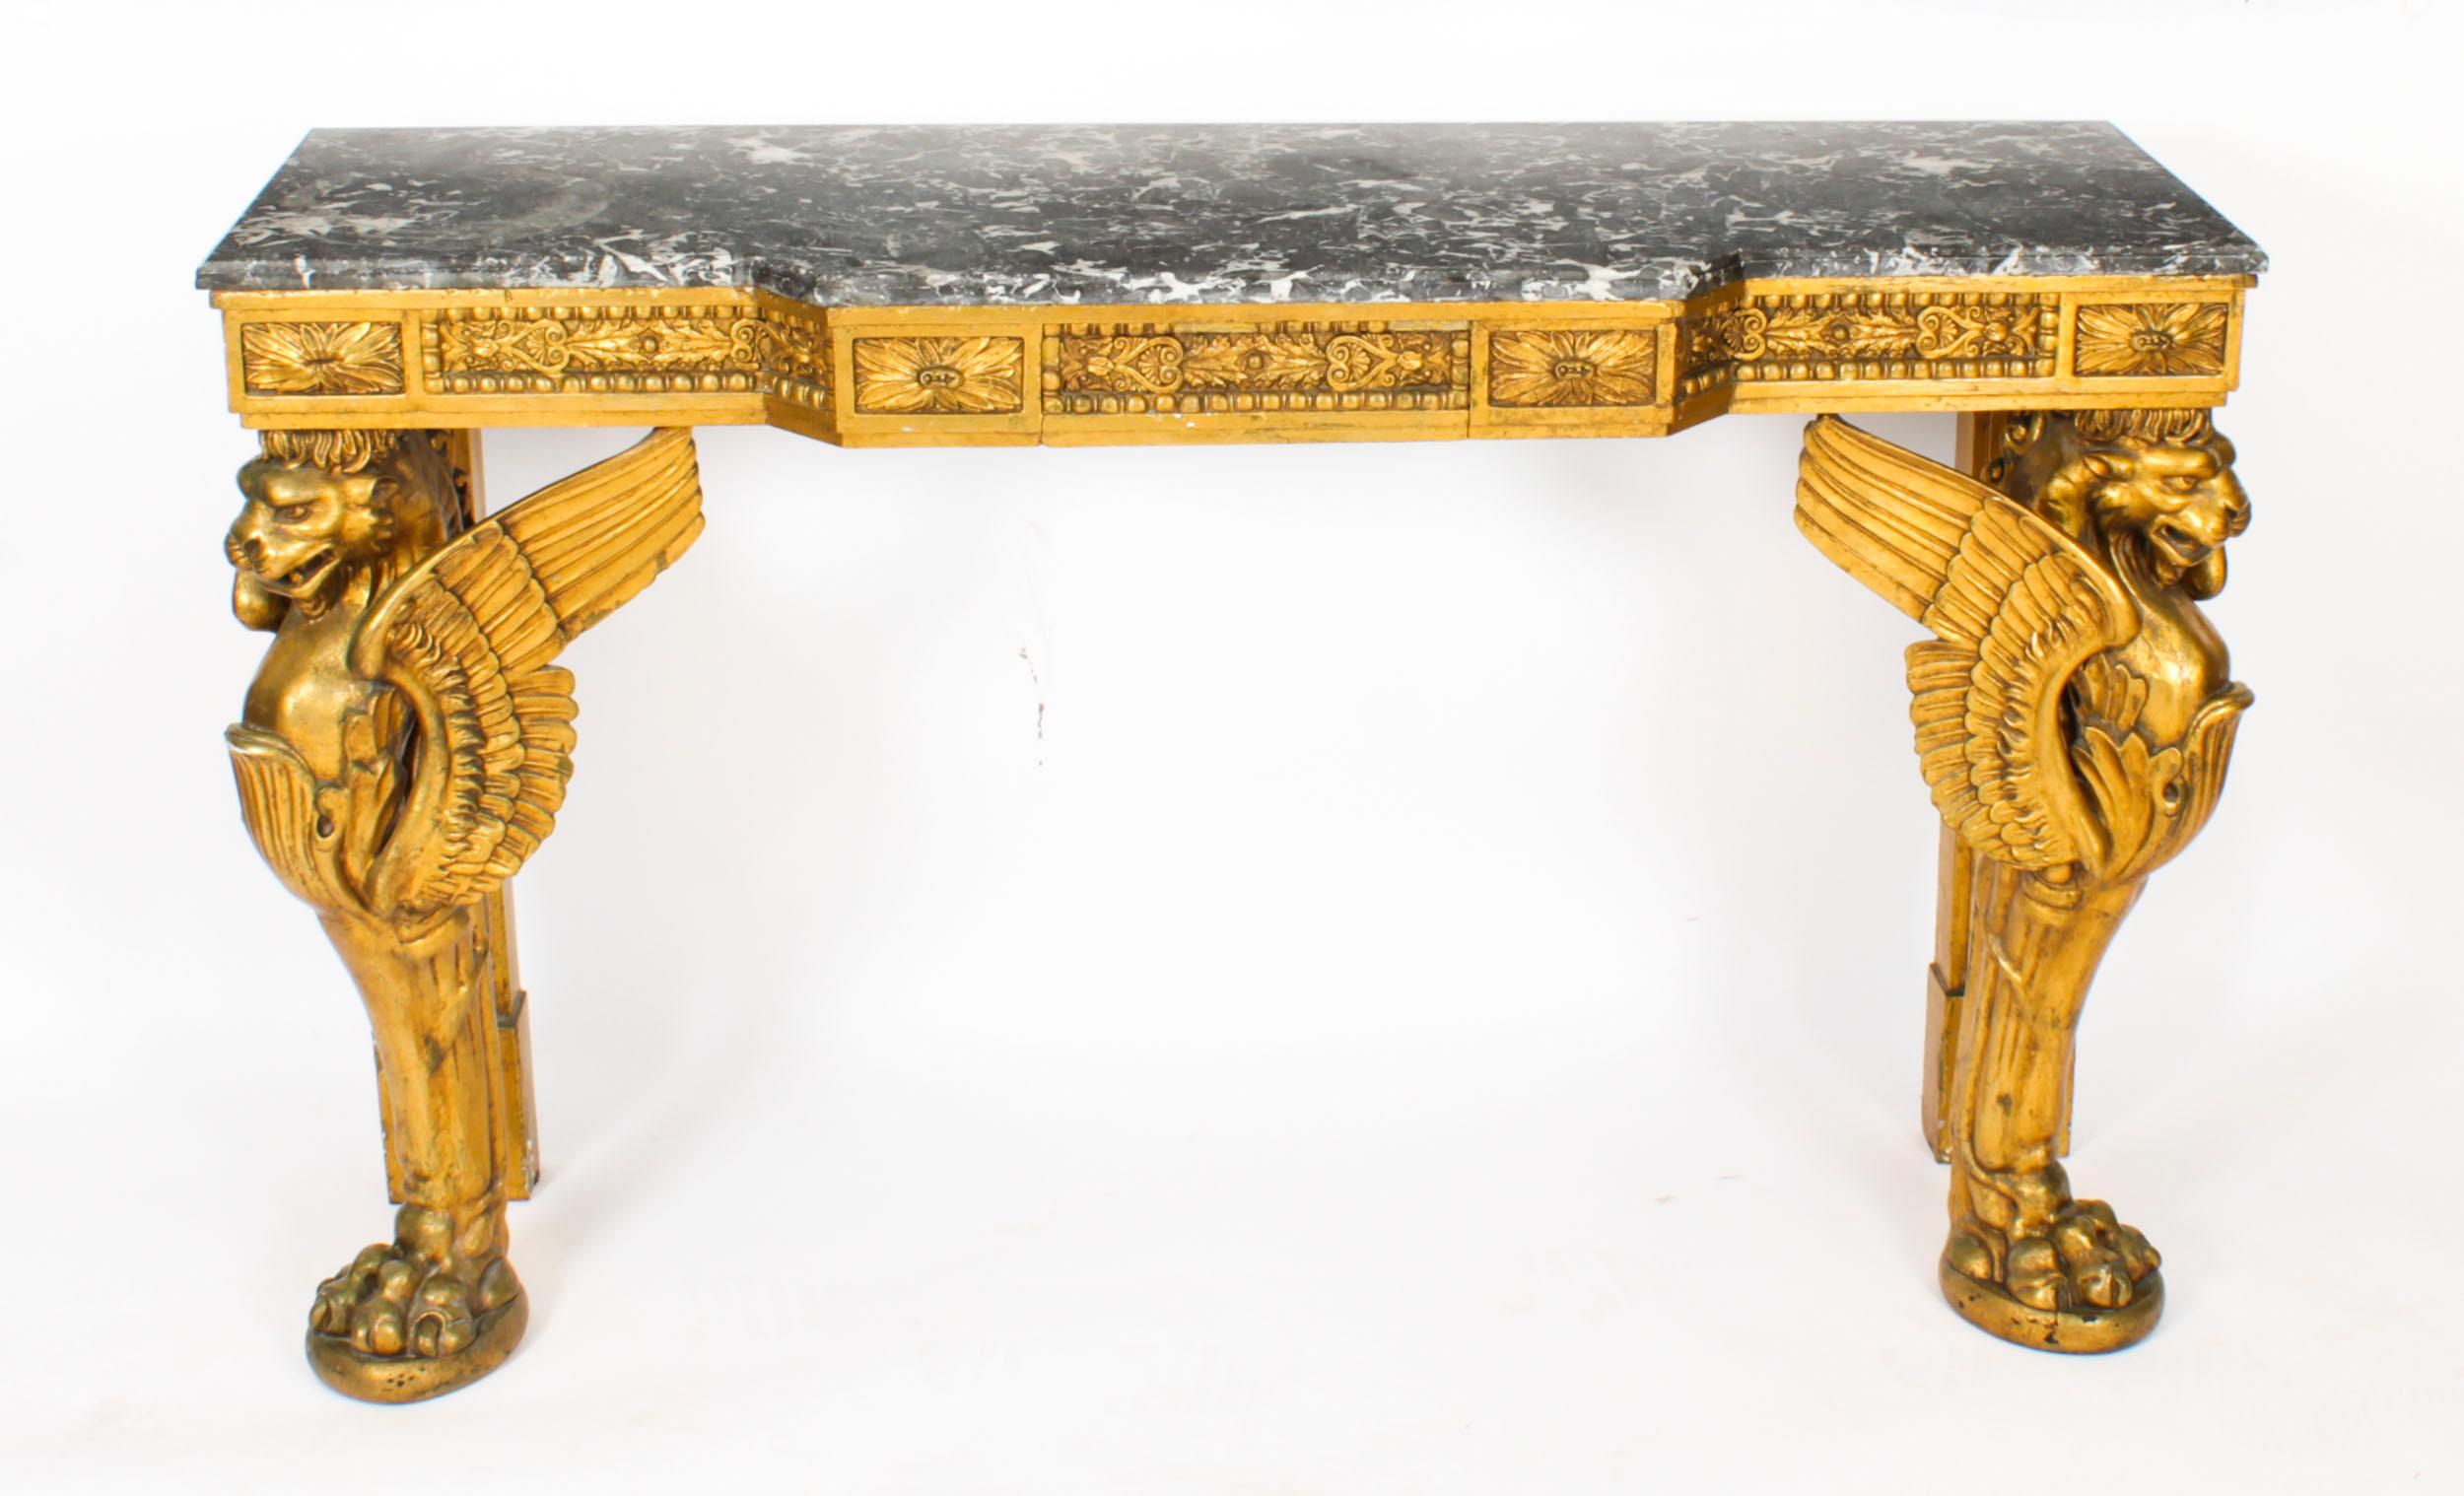 Dies ist eine schöne antike Französisch Neo-Klassik vergoldet Marmor gekrönt Konsole Tisch, CIRCA 1820 in Datum.
 
Der Tisch hat eine wundervoll geformte, grau-weiß gemaserte Marmorplatte über einem geschnitzten und vergoldeten Fries, der mit Tafeln